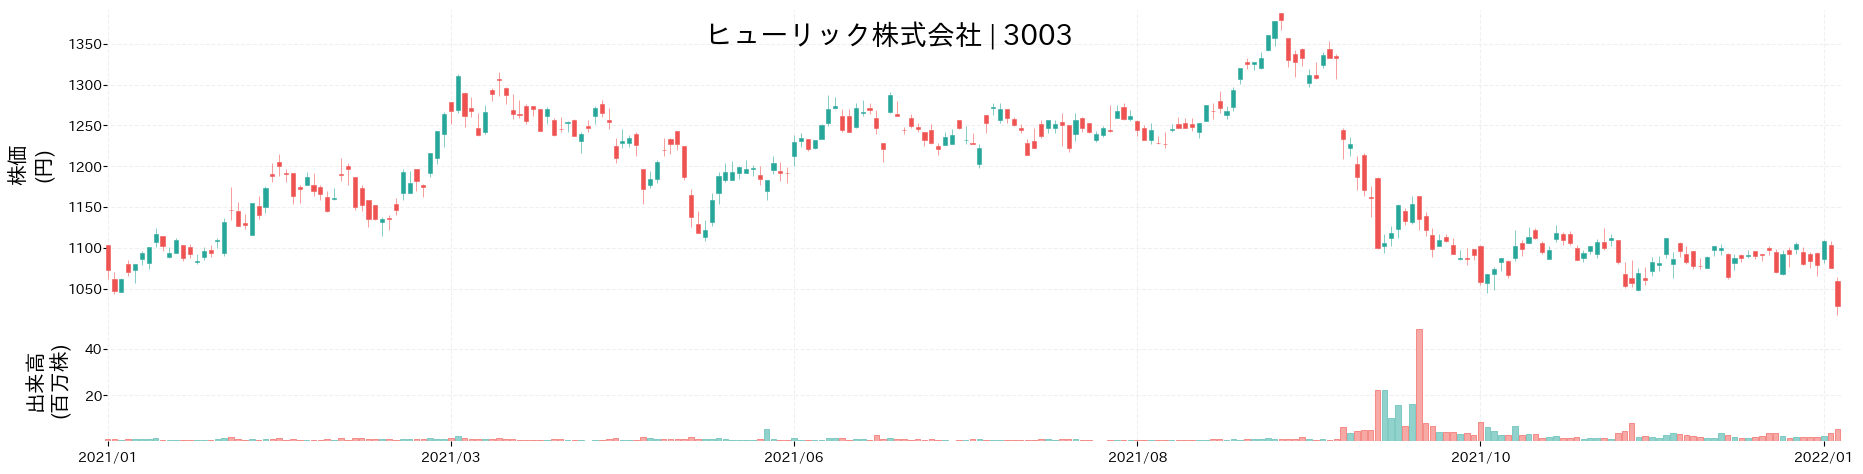 ヒューリックの株価推移(2021)